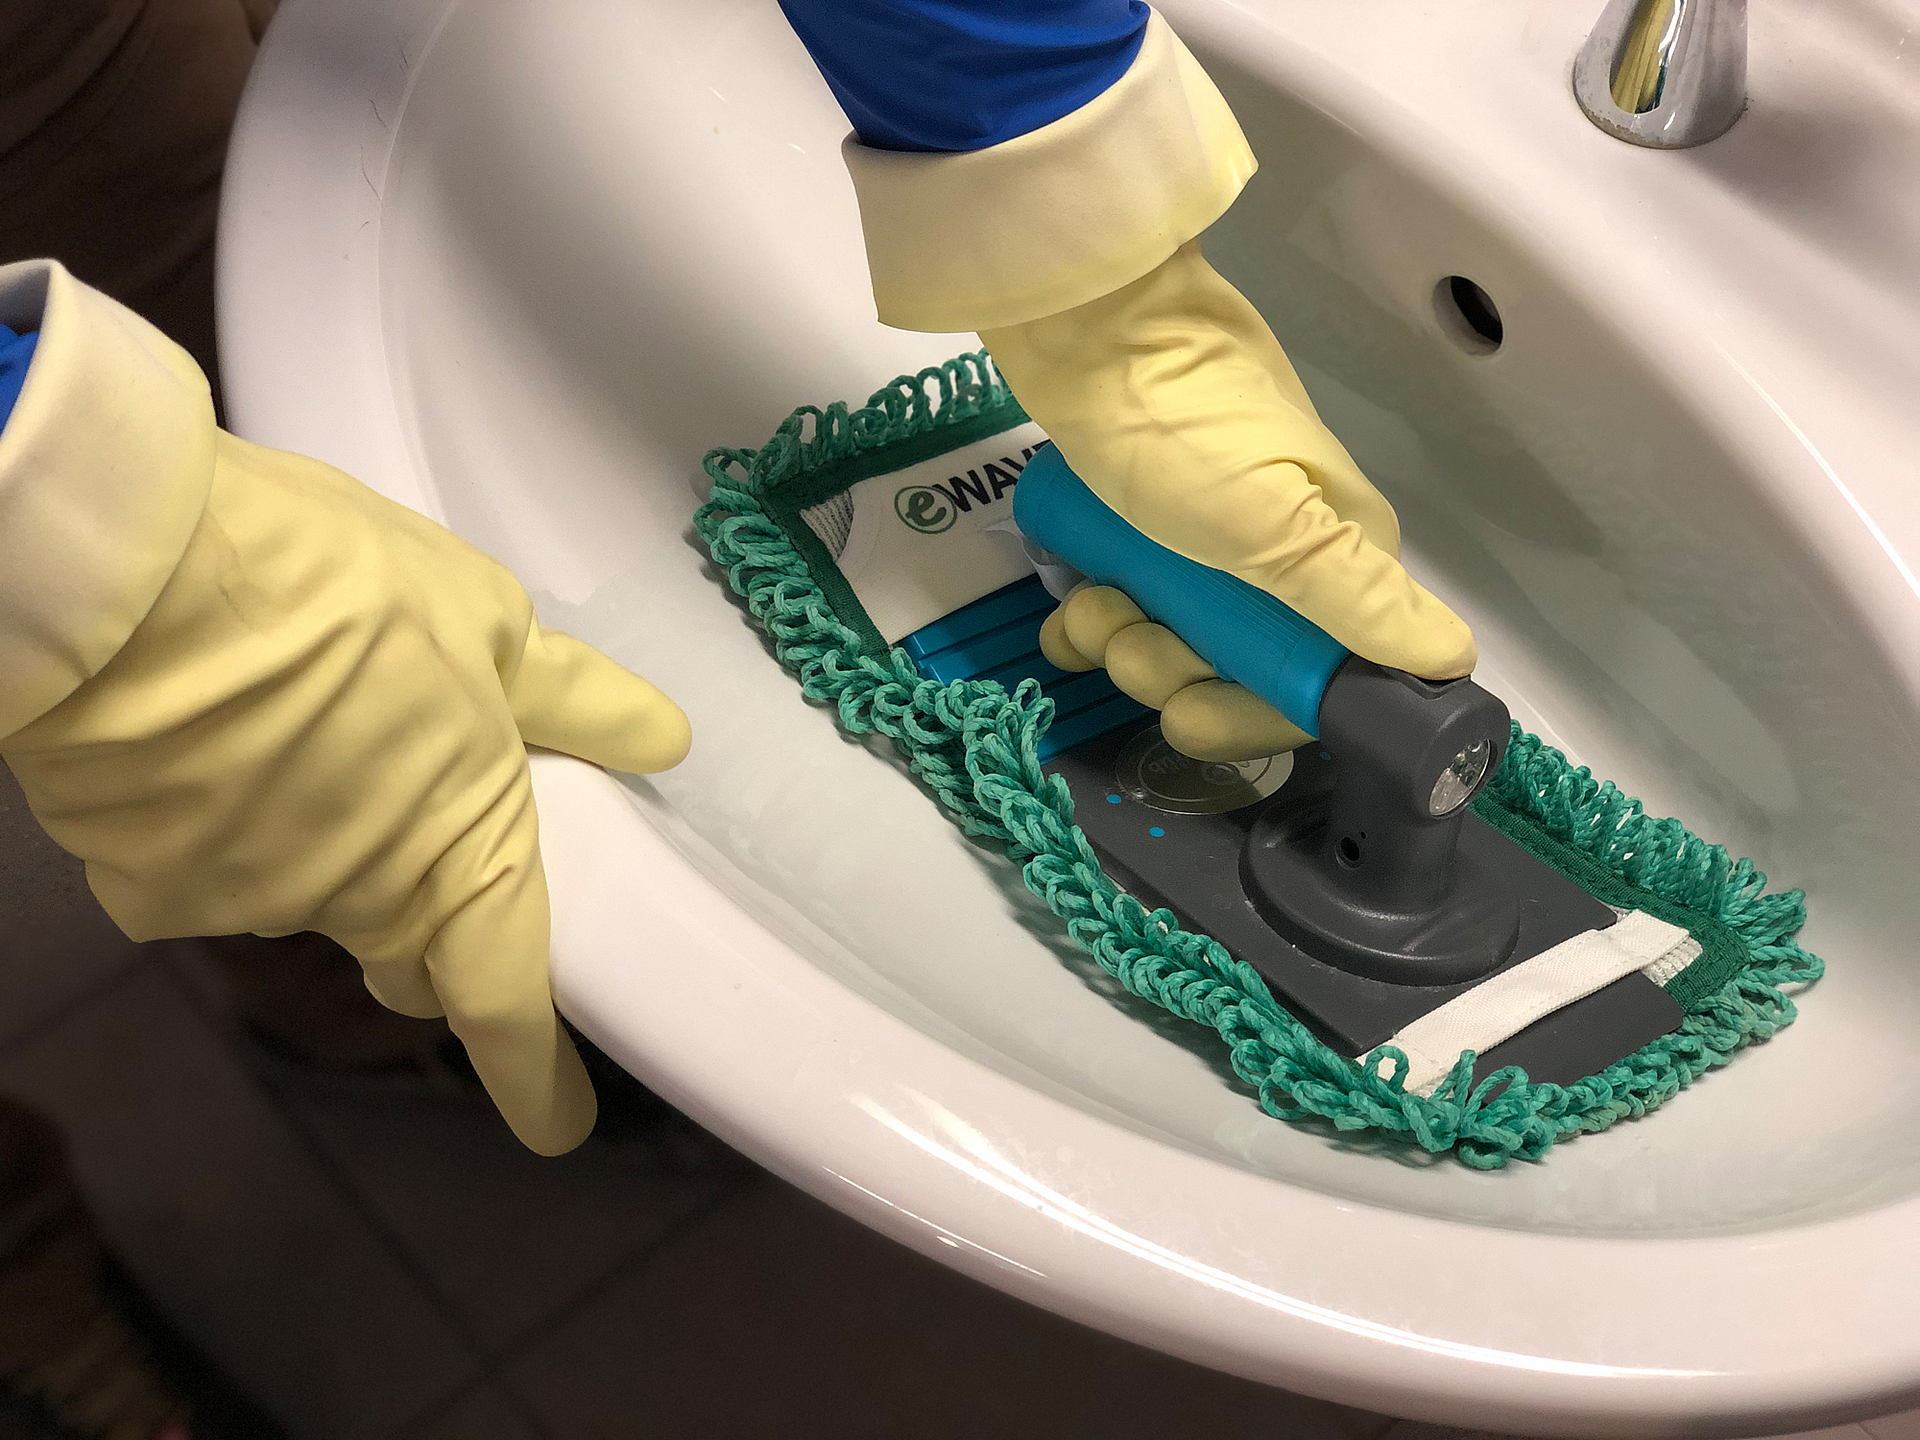 Ein Waschbecken wird mit einem Reinigungsmobb gesäubert. Die Person trägt hellgelbe Schutzhandschuhe.